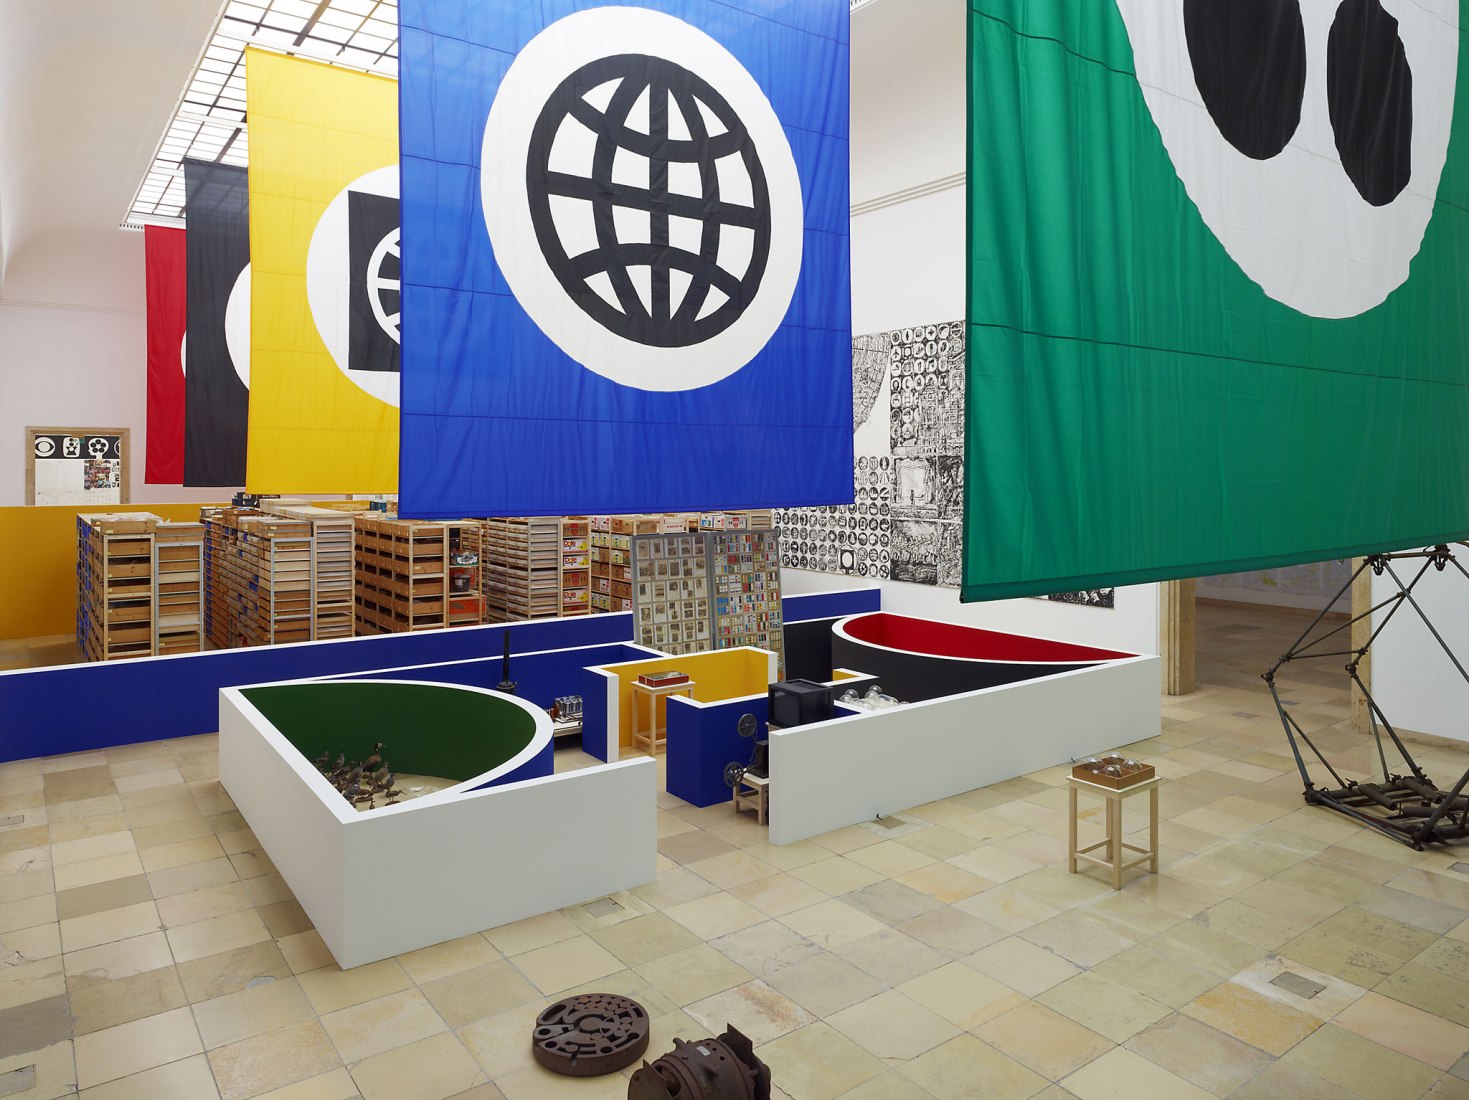 Vista de la exposición, “Matt Mullican: Organizando el Mundo”, Haus der Kunst, Munich, 2011. Cortesía del artista y Mai 36 Galerie, Zurich. Fotografía por Jens Weber